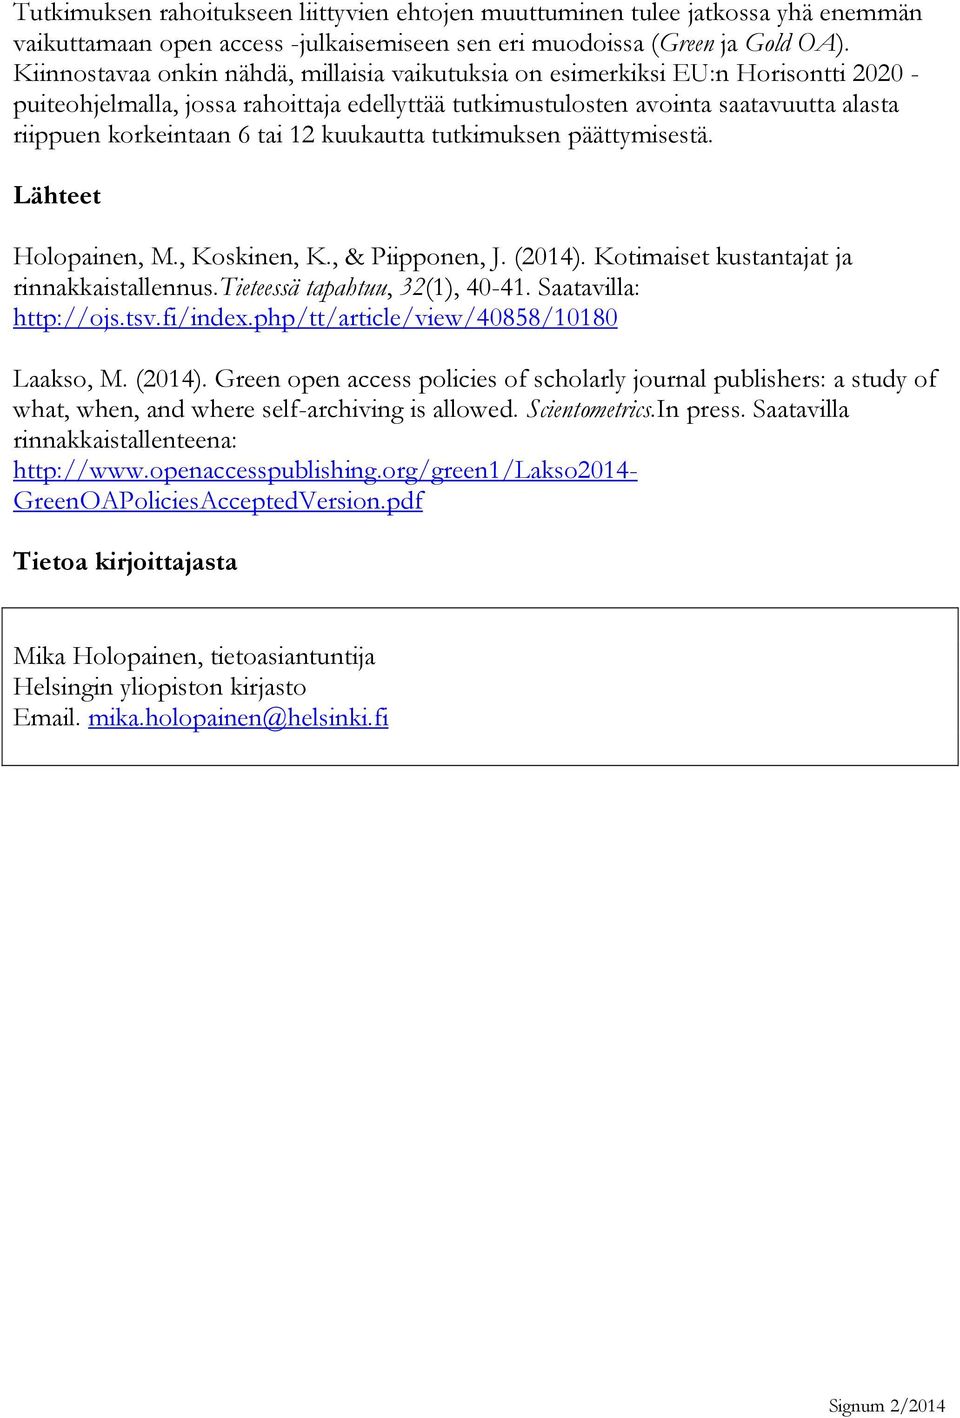 tai 12 kuukautta tutkimuksen päättymisestä. Lähteet Holopainen, M., Koskinen, K., & Piipponen, J. (2014). Kotimaiset kustantajat ja rinnakkaistallennus.tieteessä tapahtuu, 32(1), 40-41.